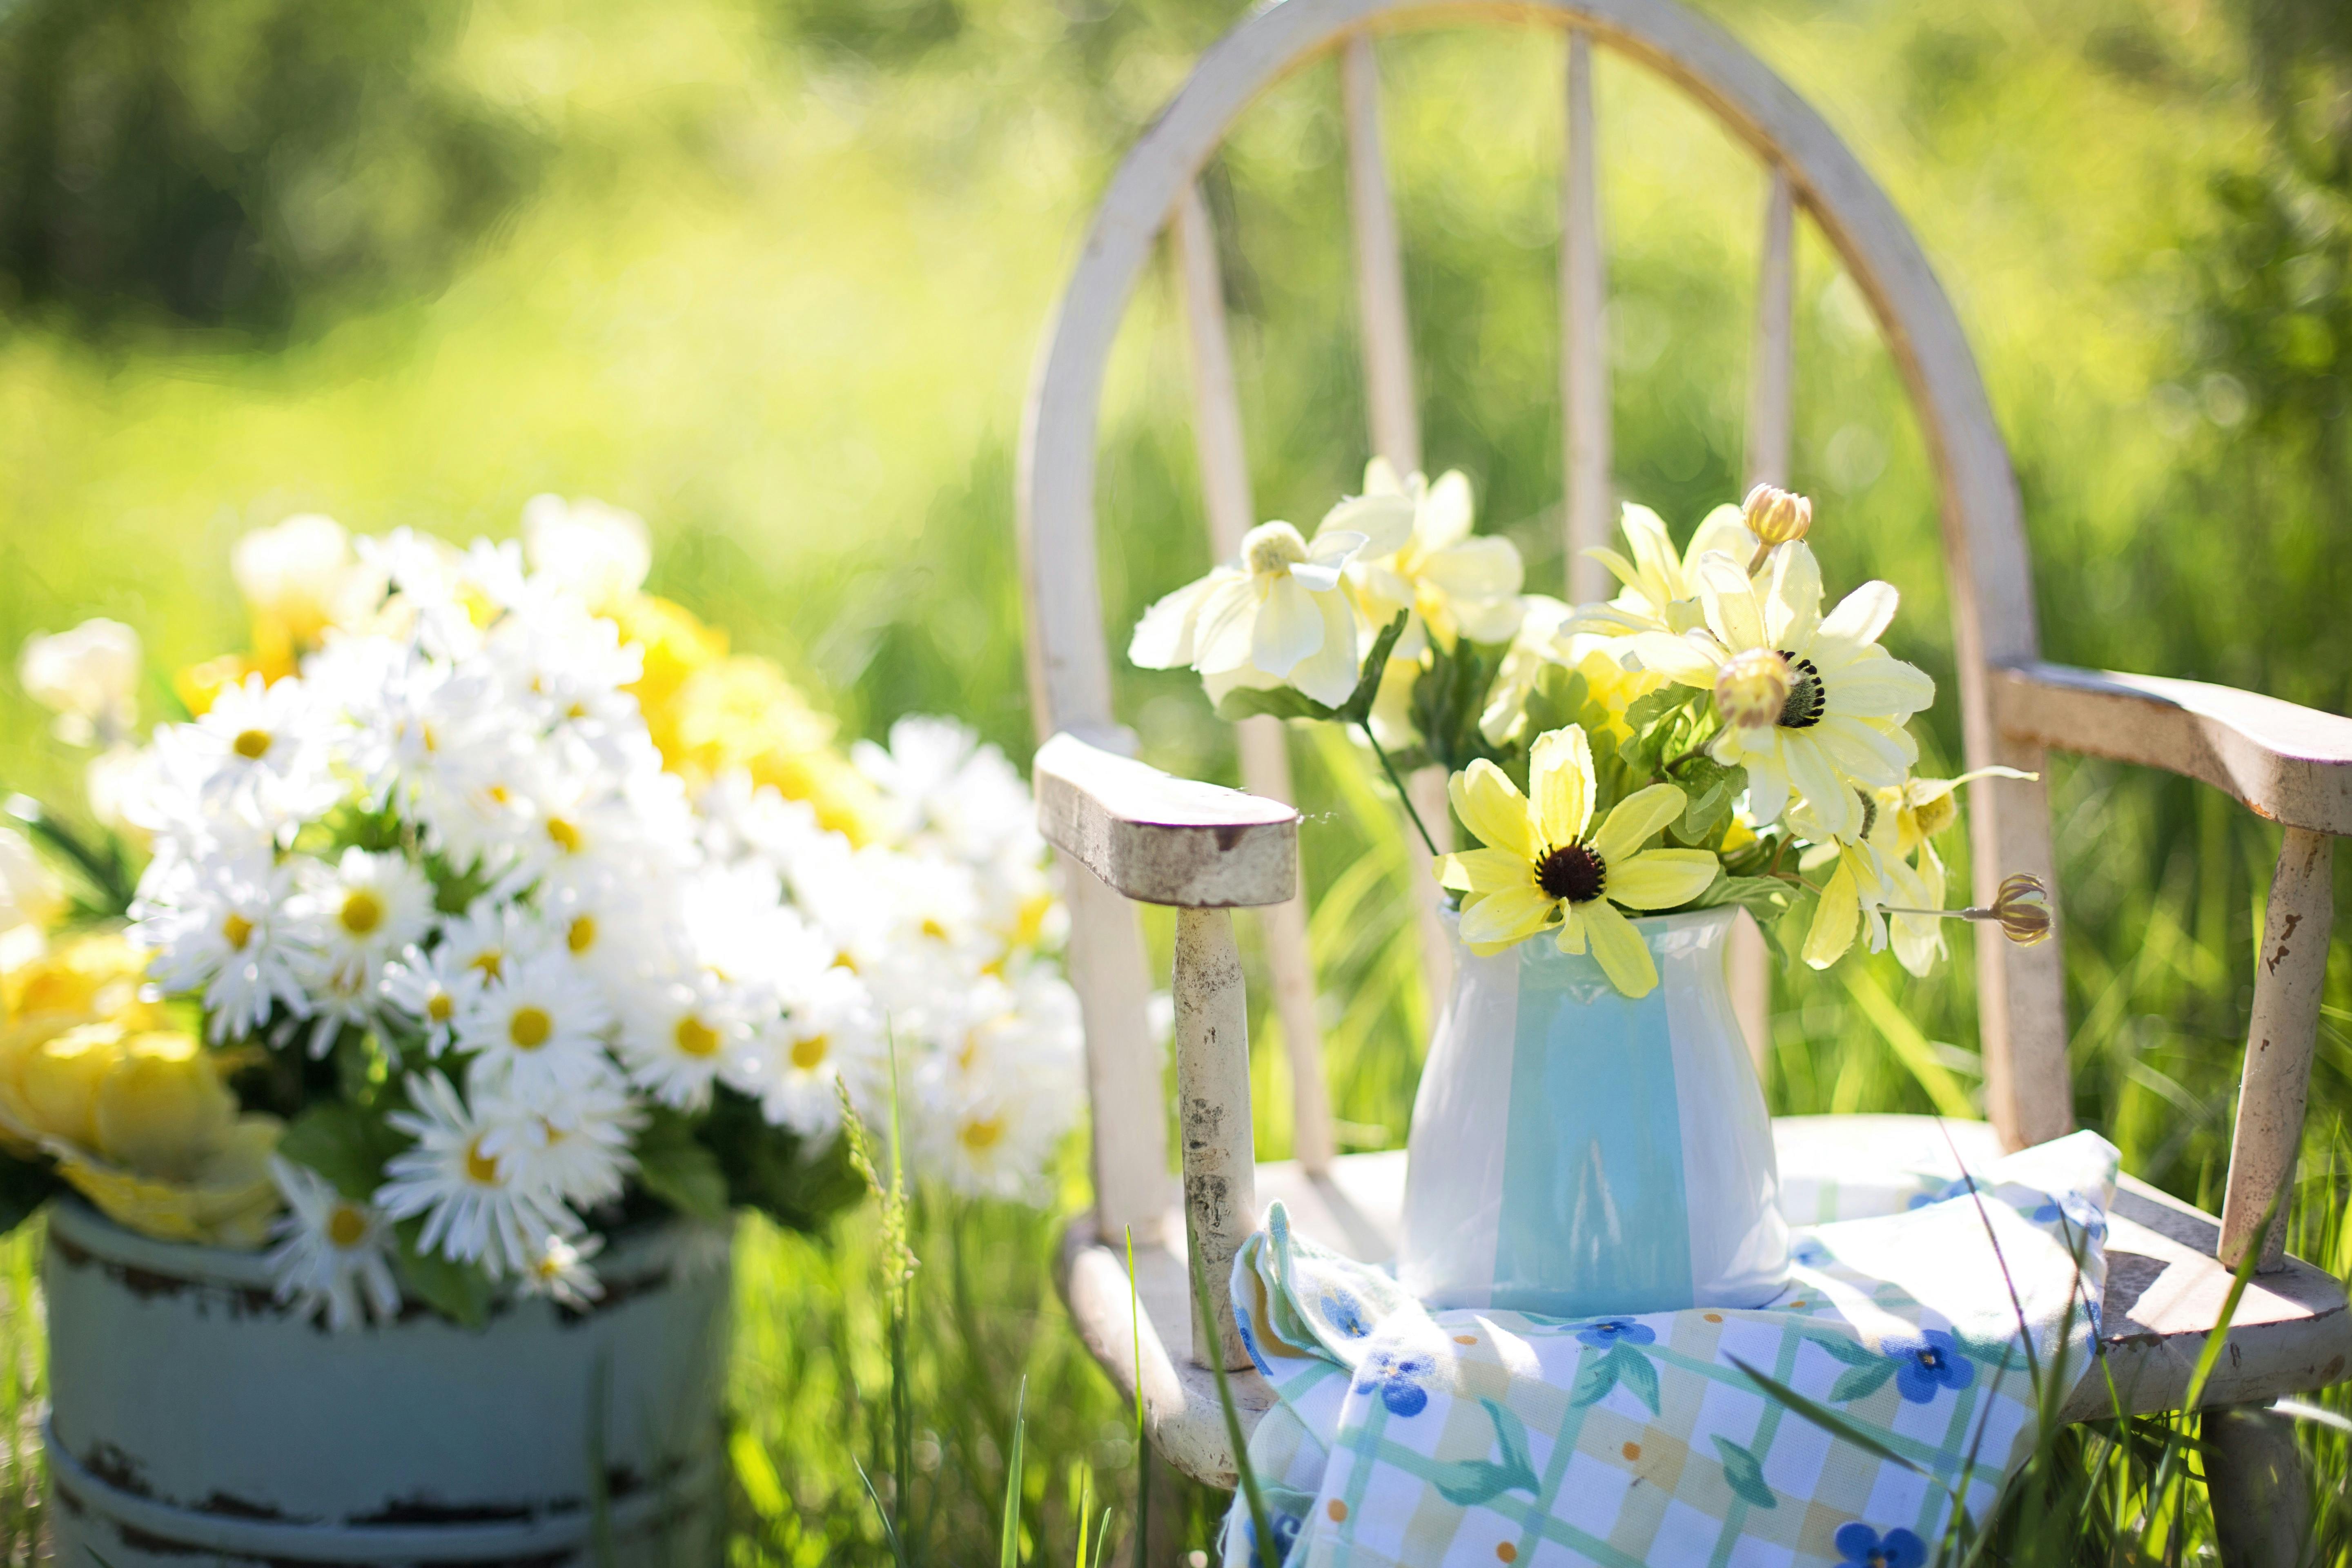 Kesäinen ulkokuva, jossa kukkia maljakossa pöydällä ja tuolilla.